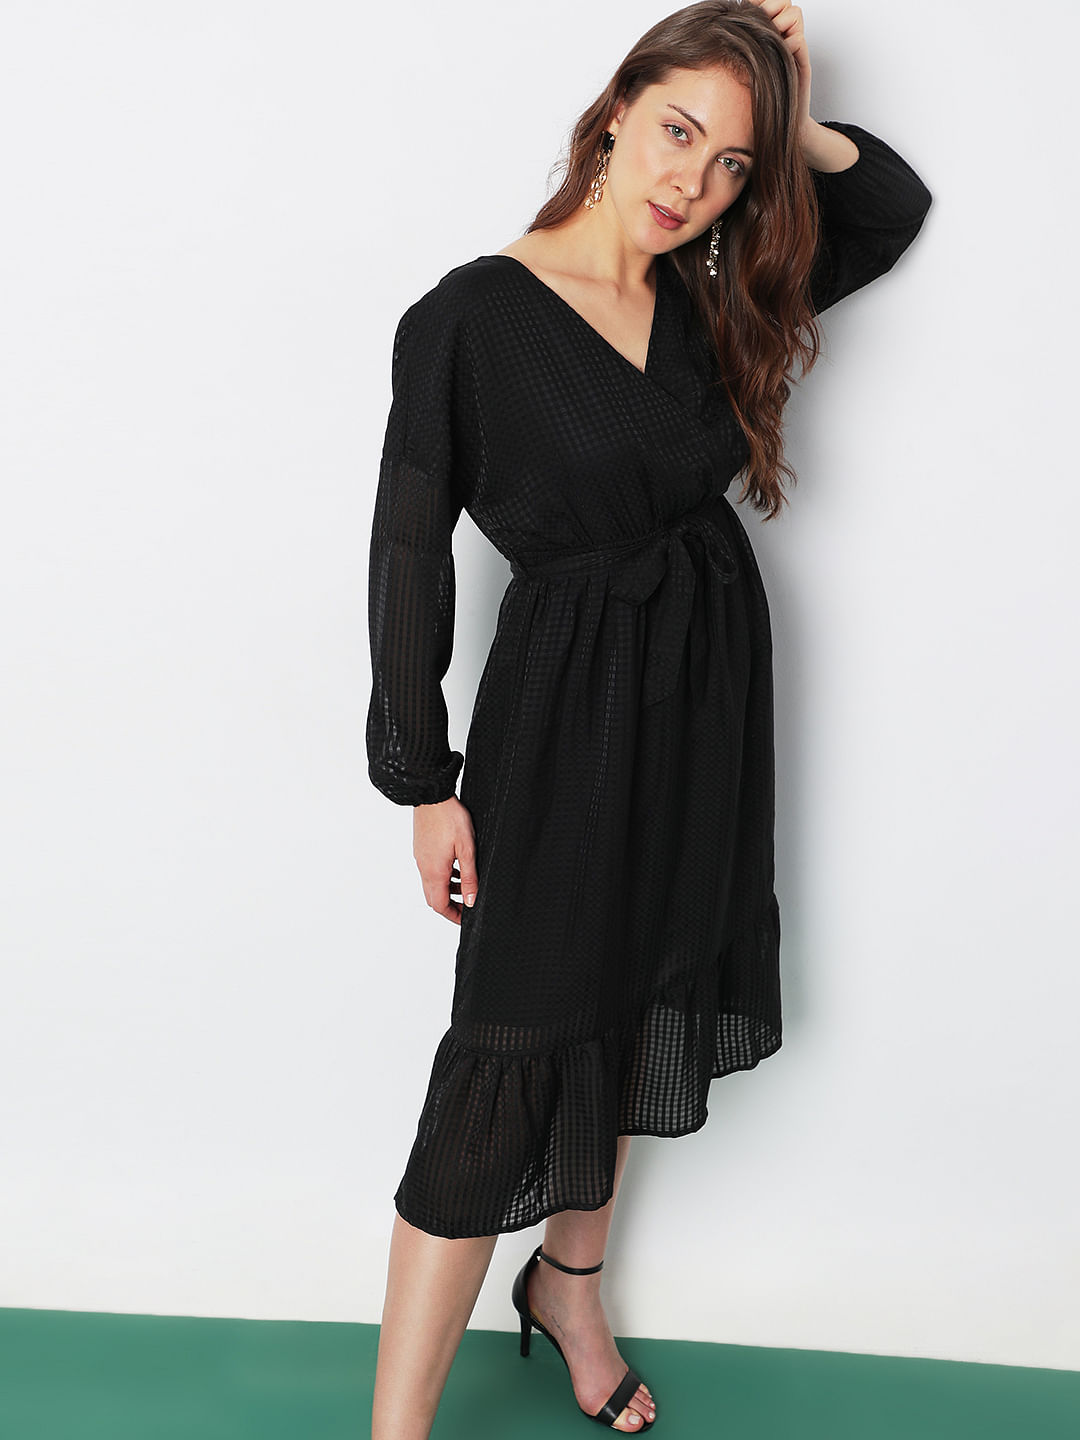 Black Crinkle Chiffon Suit | Buy Designer Party Dresses | Fashion dress  party, Pakistani dresses online, Pakistani fashion party wear